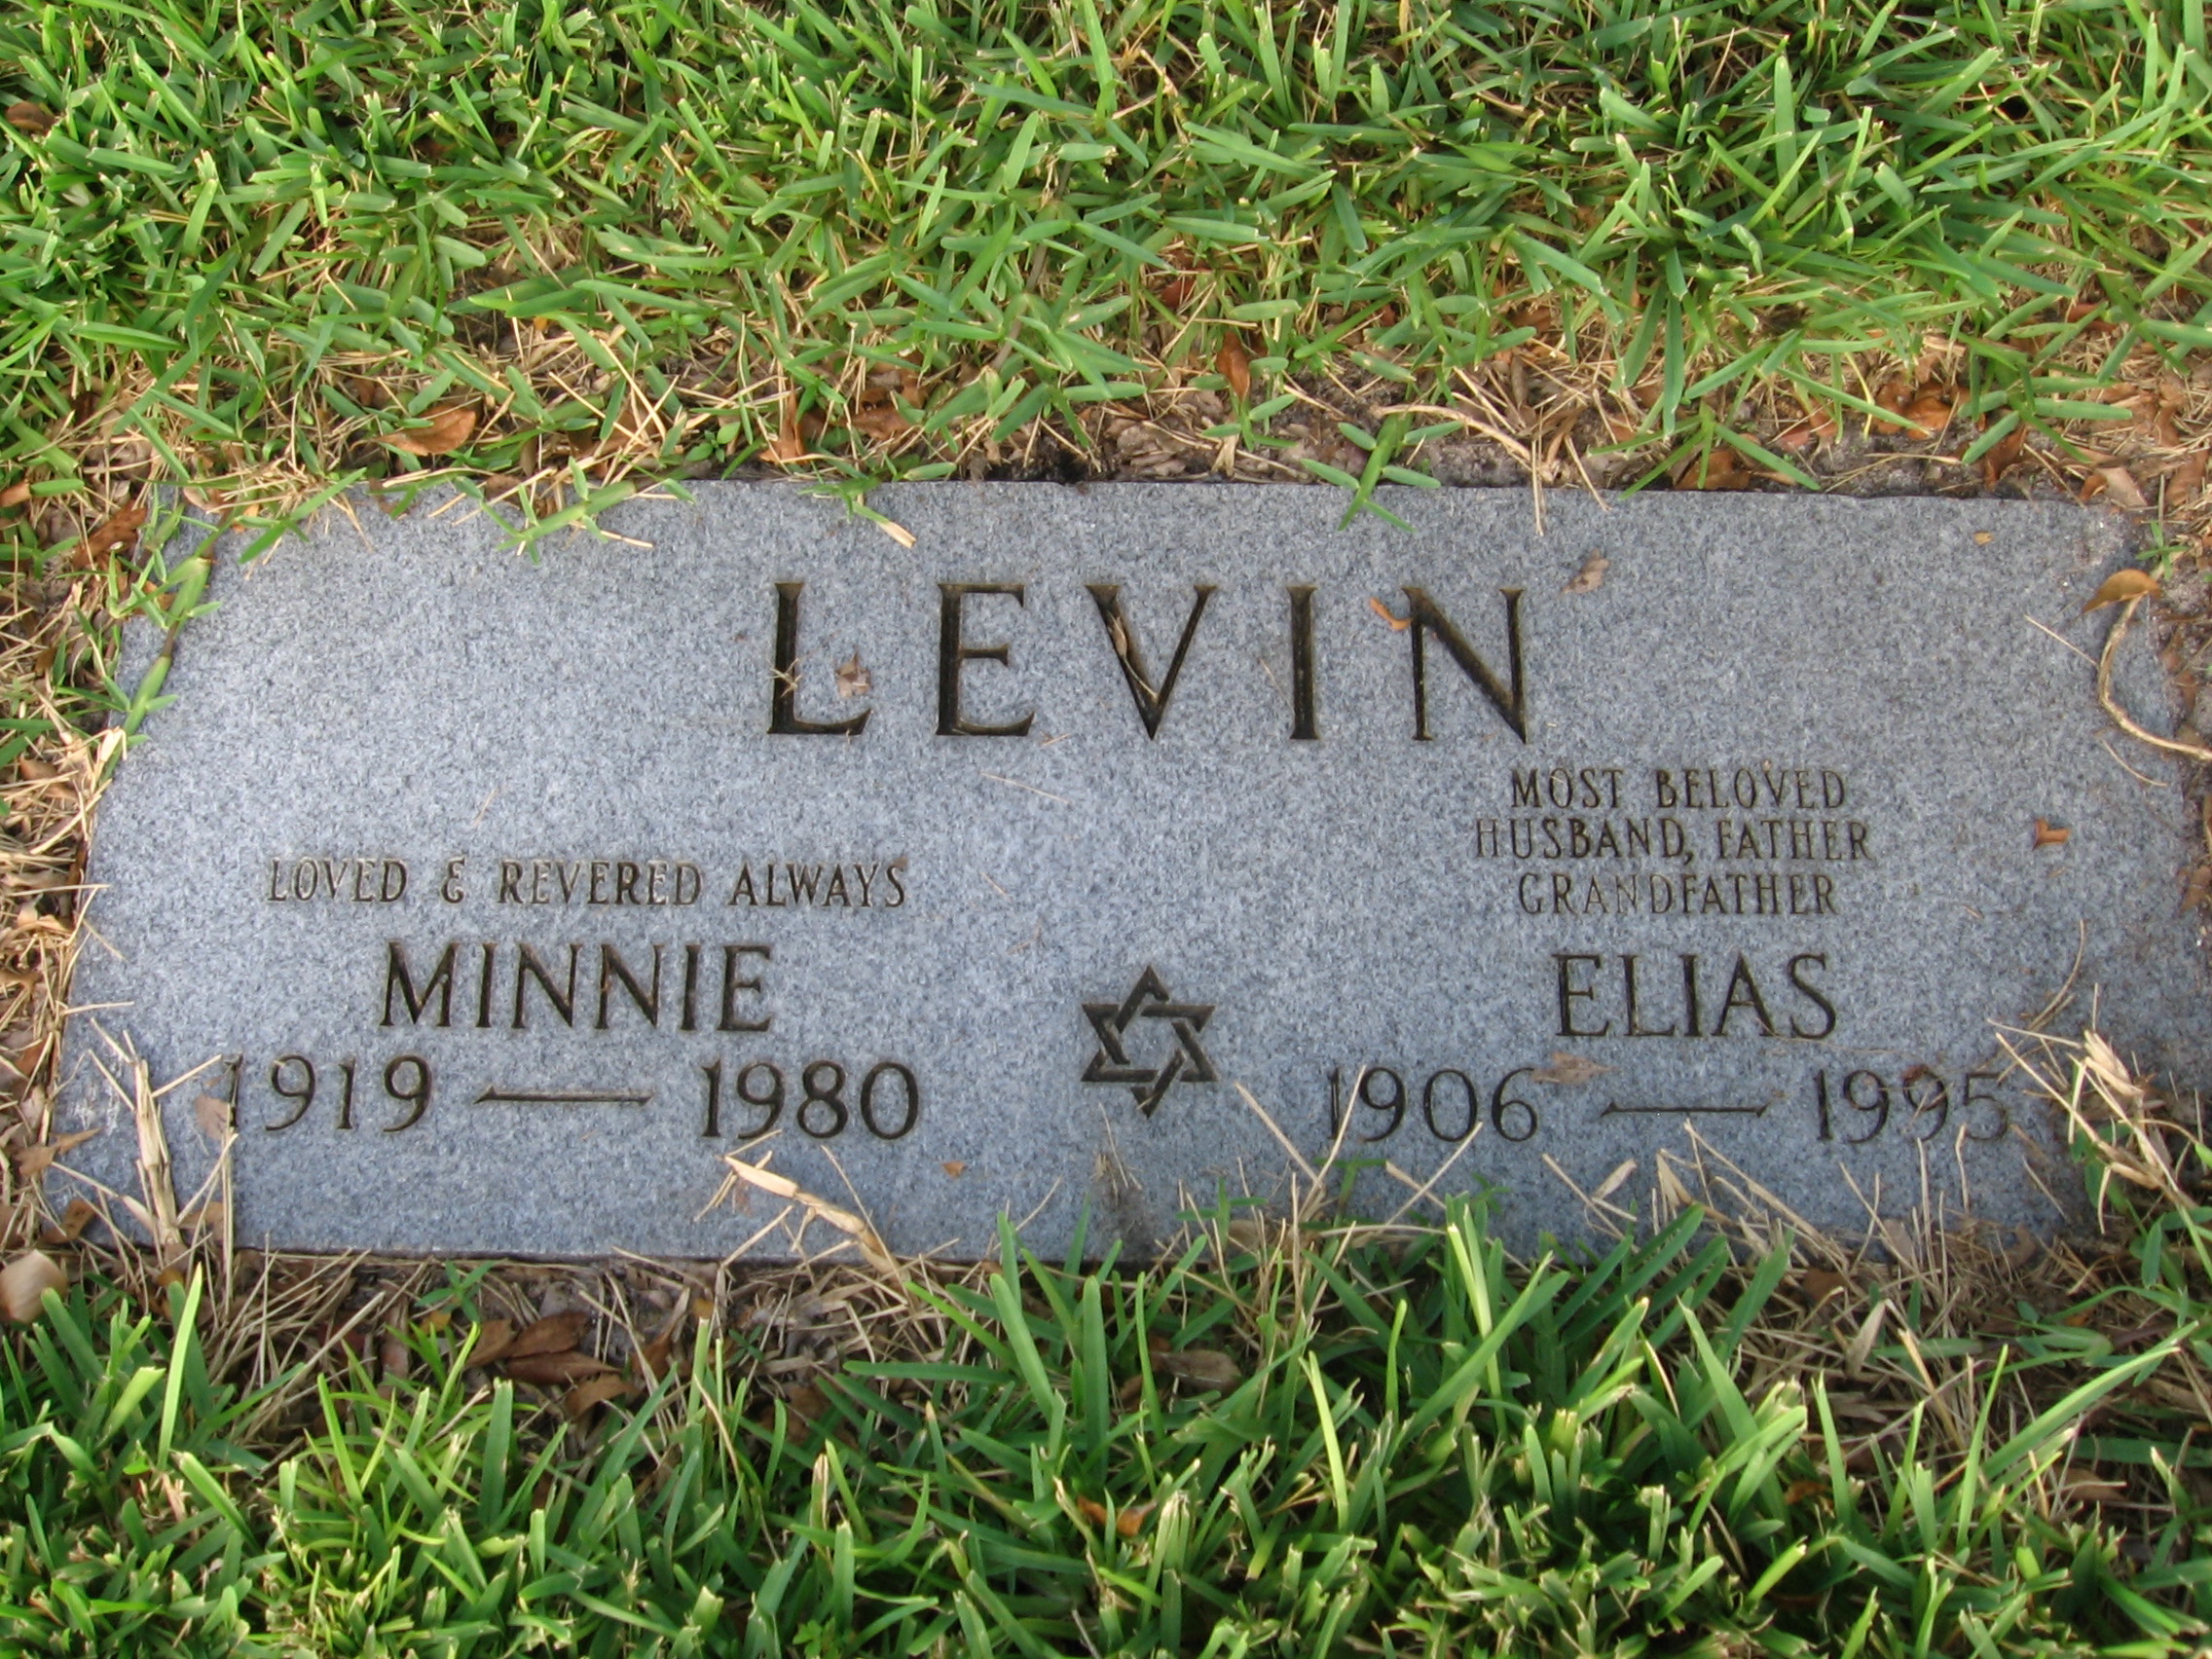 Elias Levin